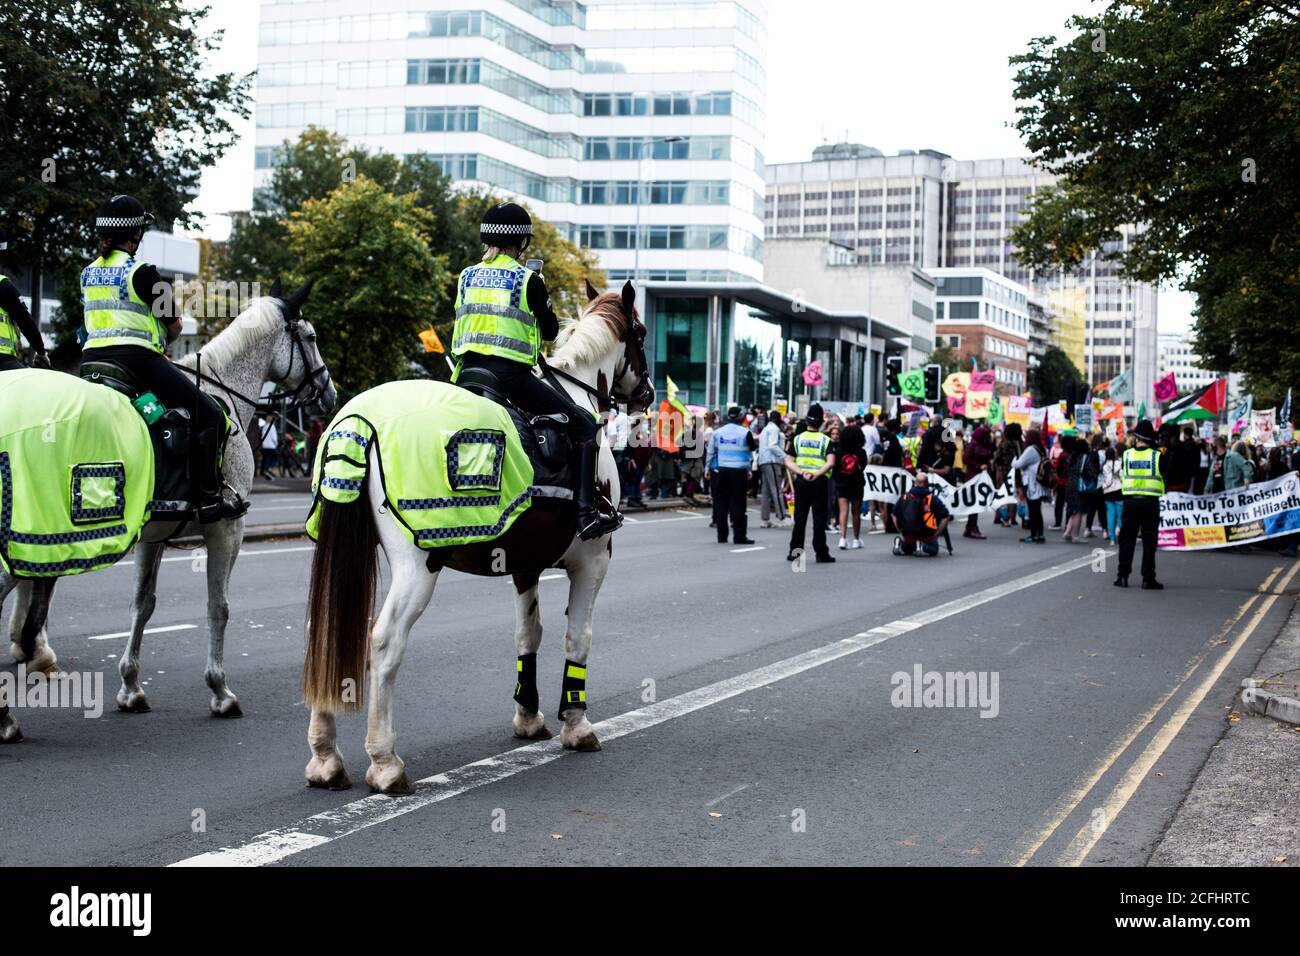 Les policiers sur les chevaux de police se rassemblent devant les manifestants Banque D'Images